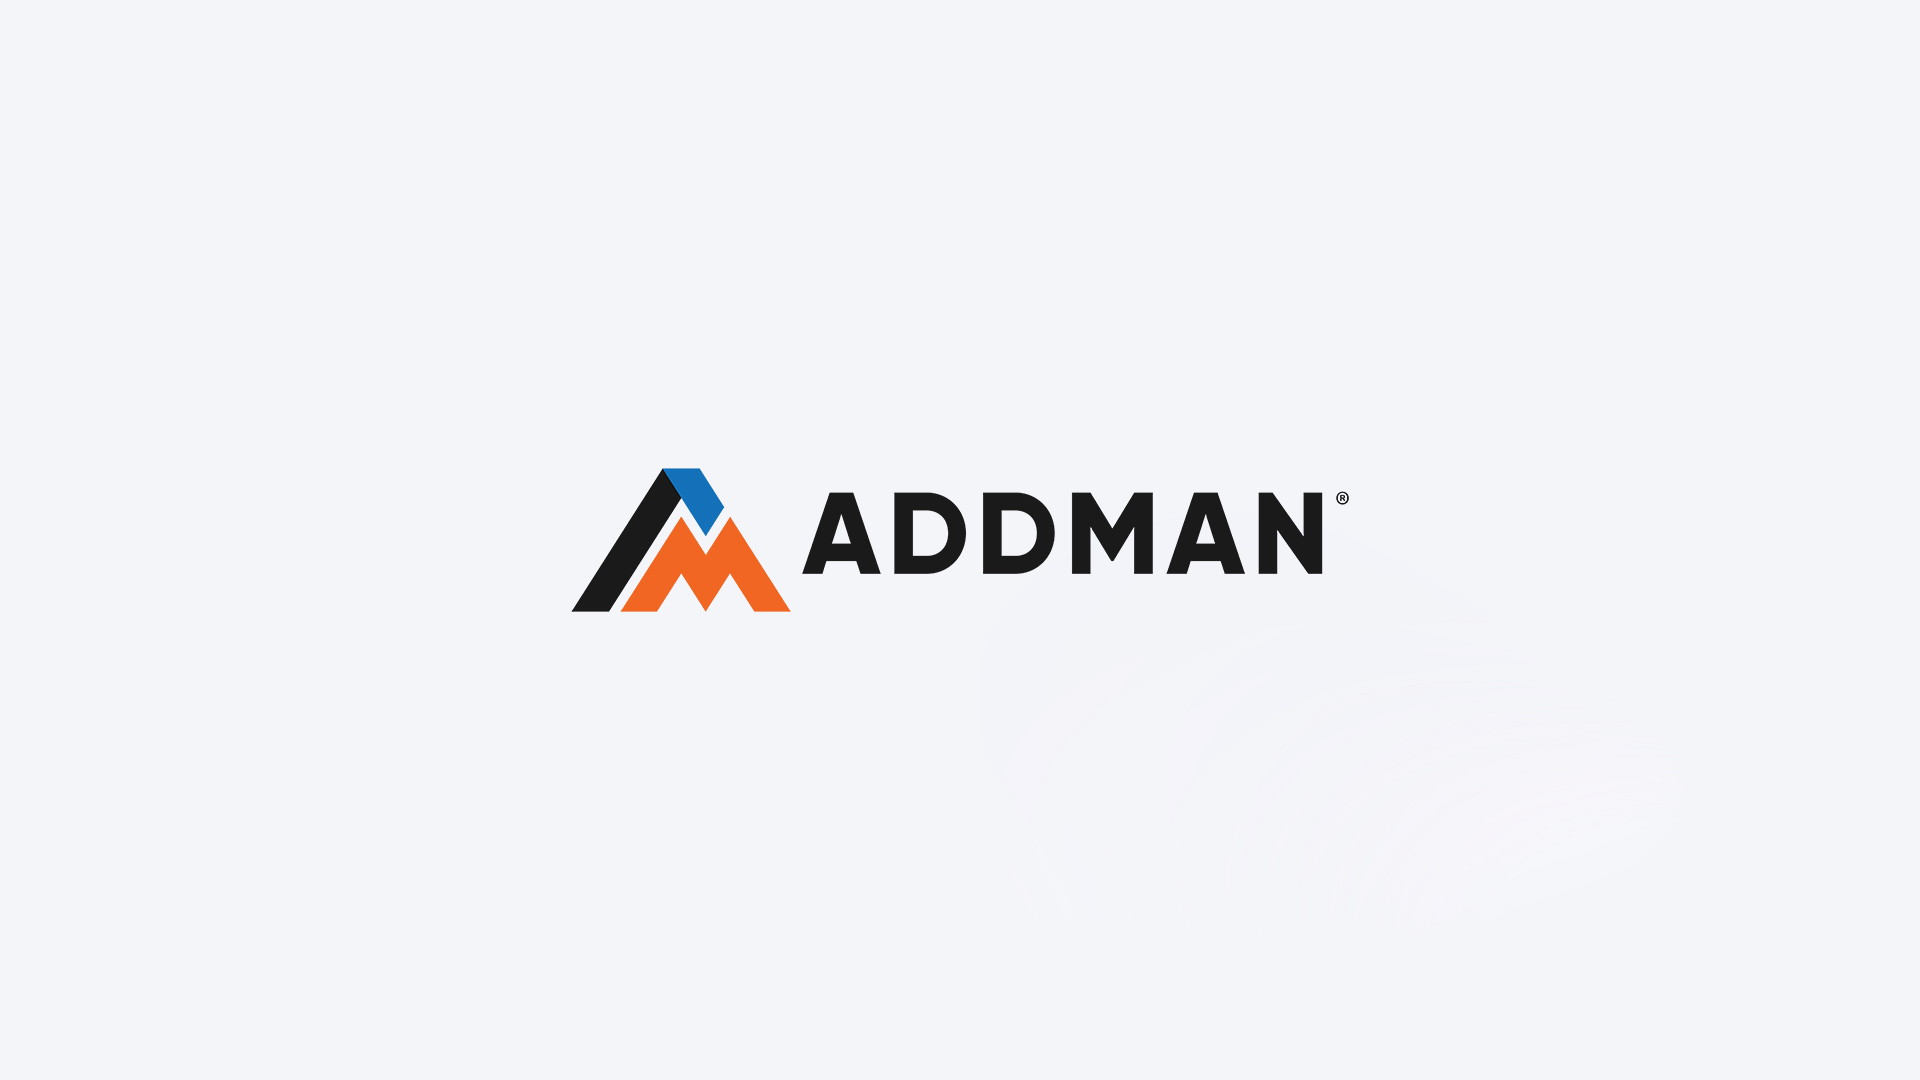 ADDMAN joins the Roboze 3D Parts Network